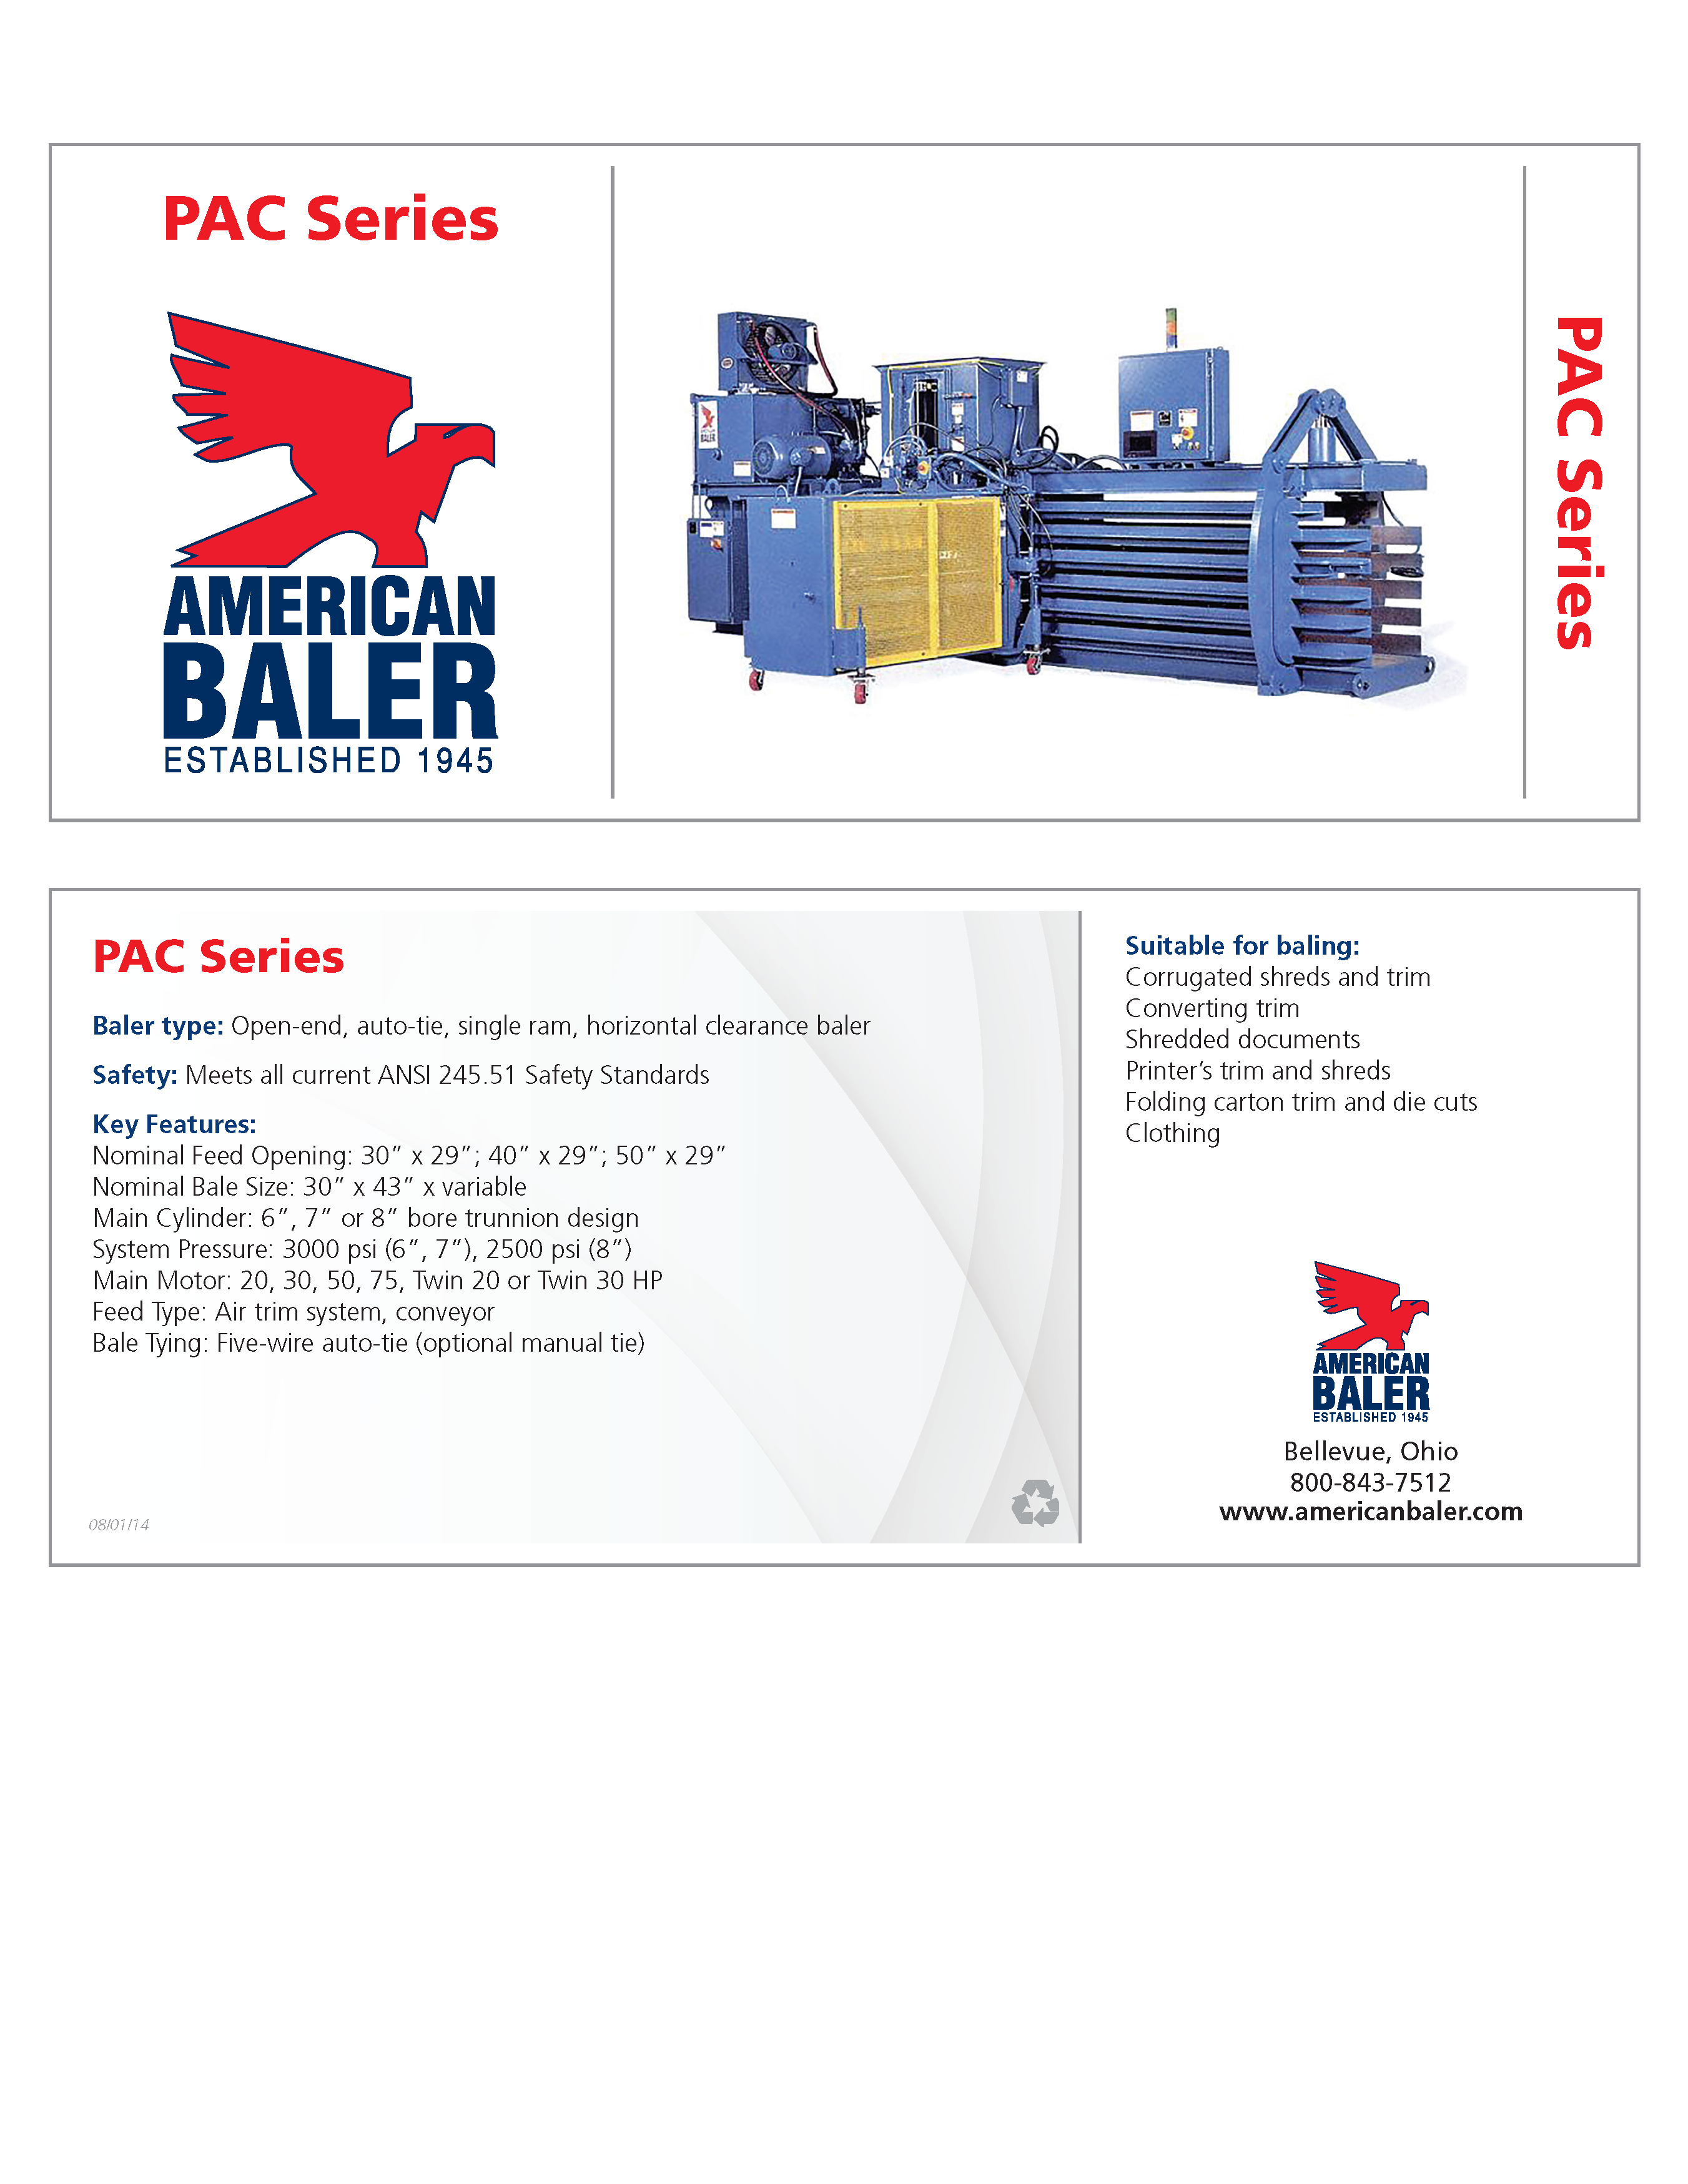 Conozca más de las compactadoras de la serie PAC en el folleto American Baler.